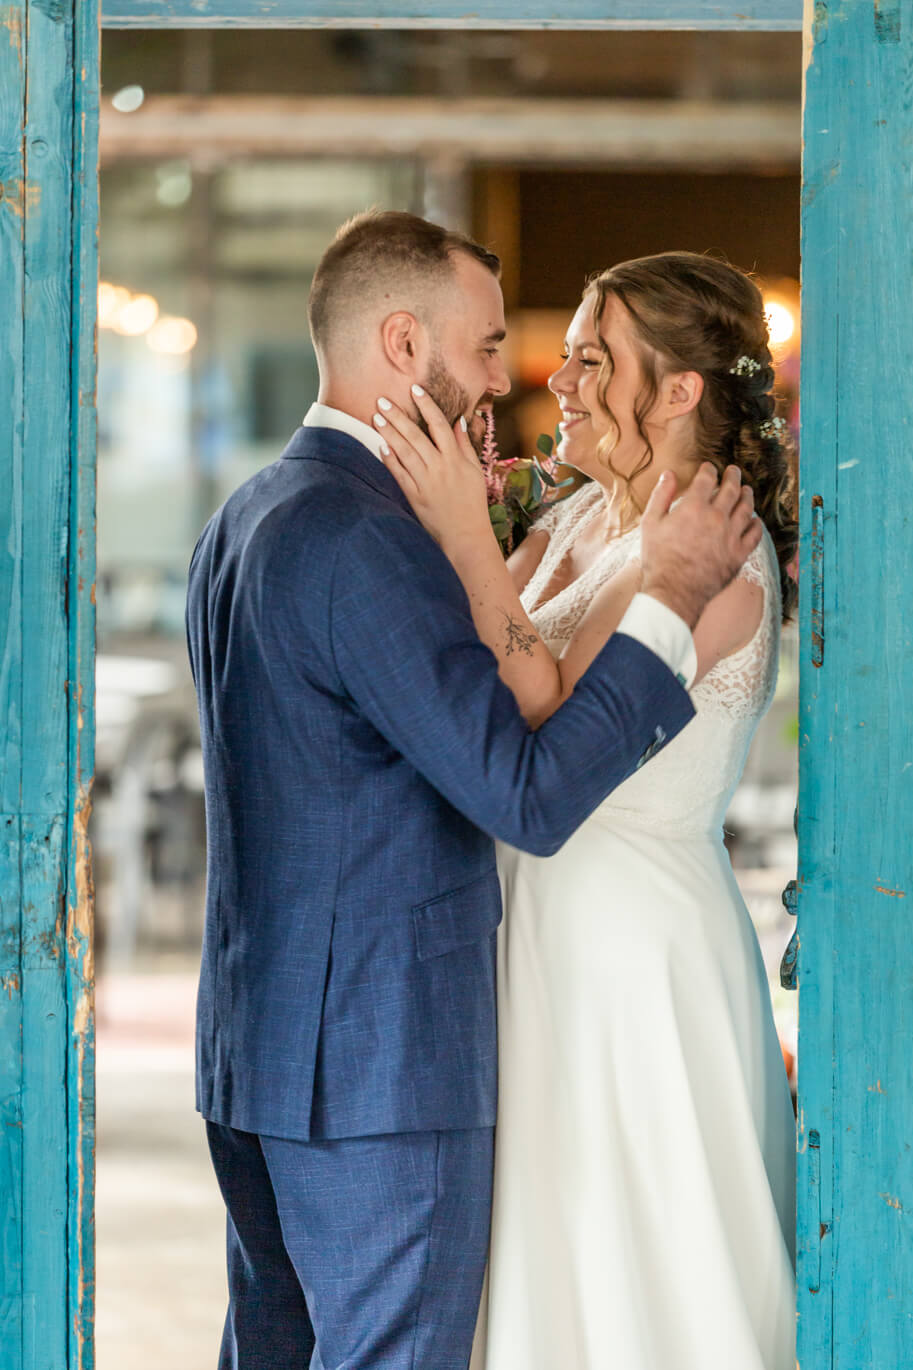 Bruid en bruidegom in een blauwe deuropening. Ze staan tegenover elkaar en houden elkaar liefdevol vast.